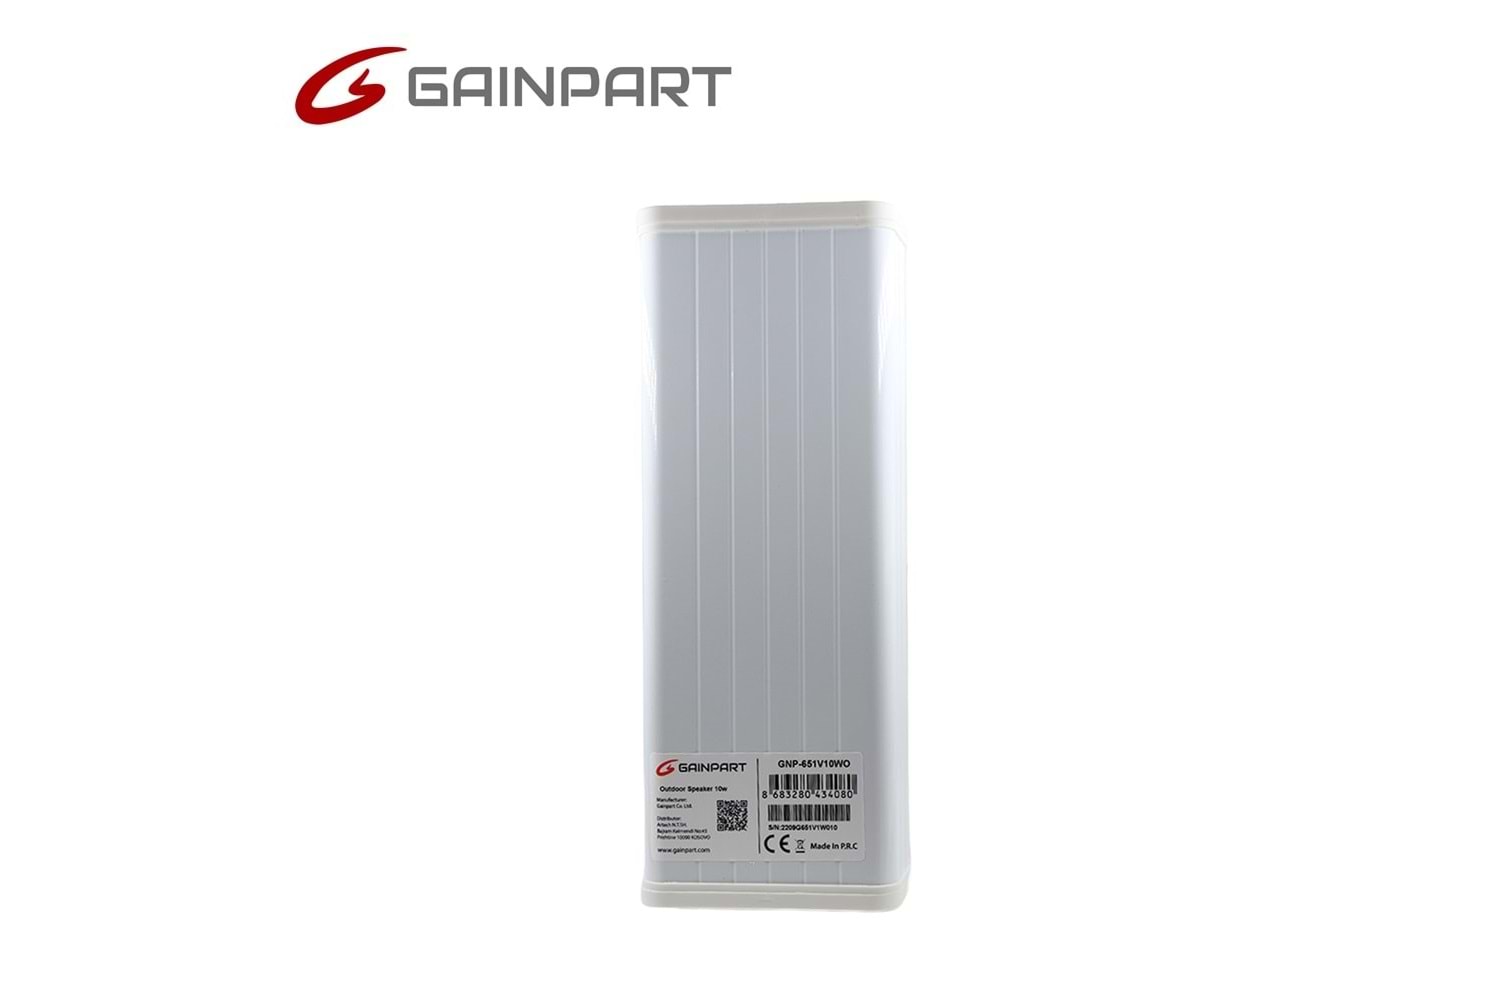 GAINPART GNP-653V30WO Wall Speaker 30W White Outside 547×106×75mm